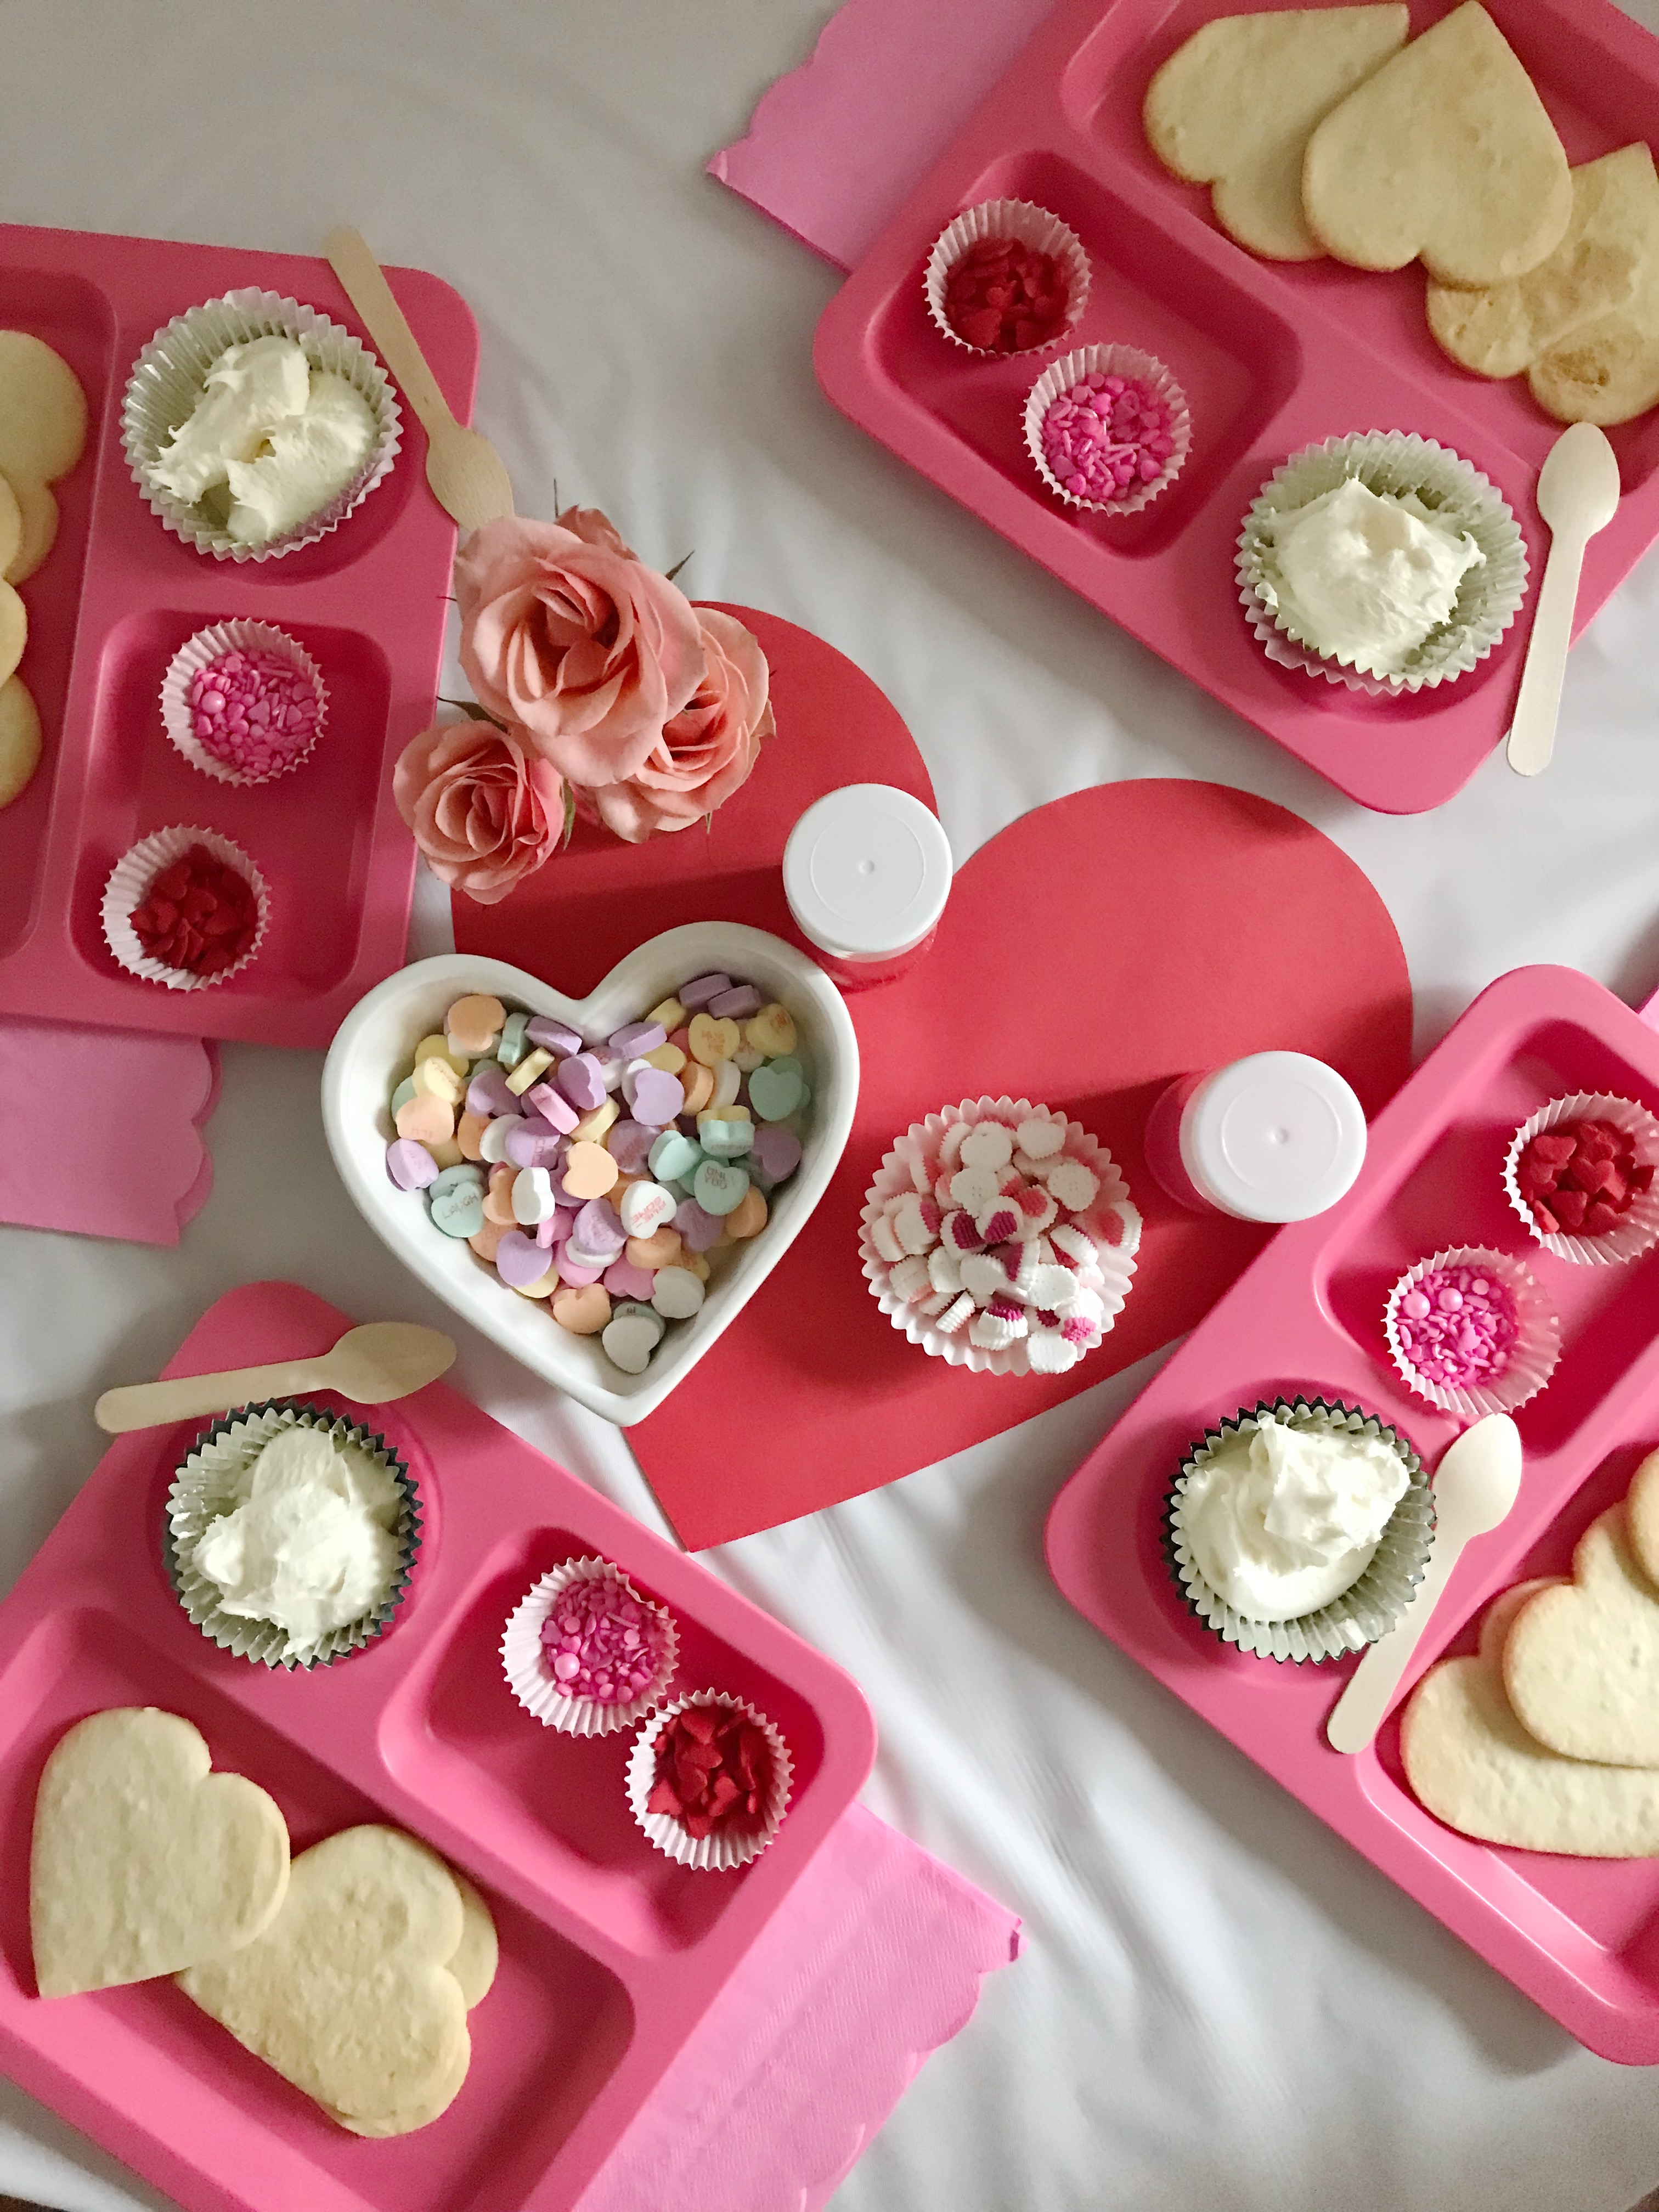 Hướng dẫn decorating valentine cookies để tạo ra bánh quy tình yêu đẹp mắt